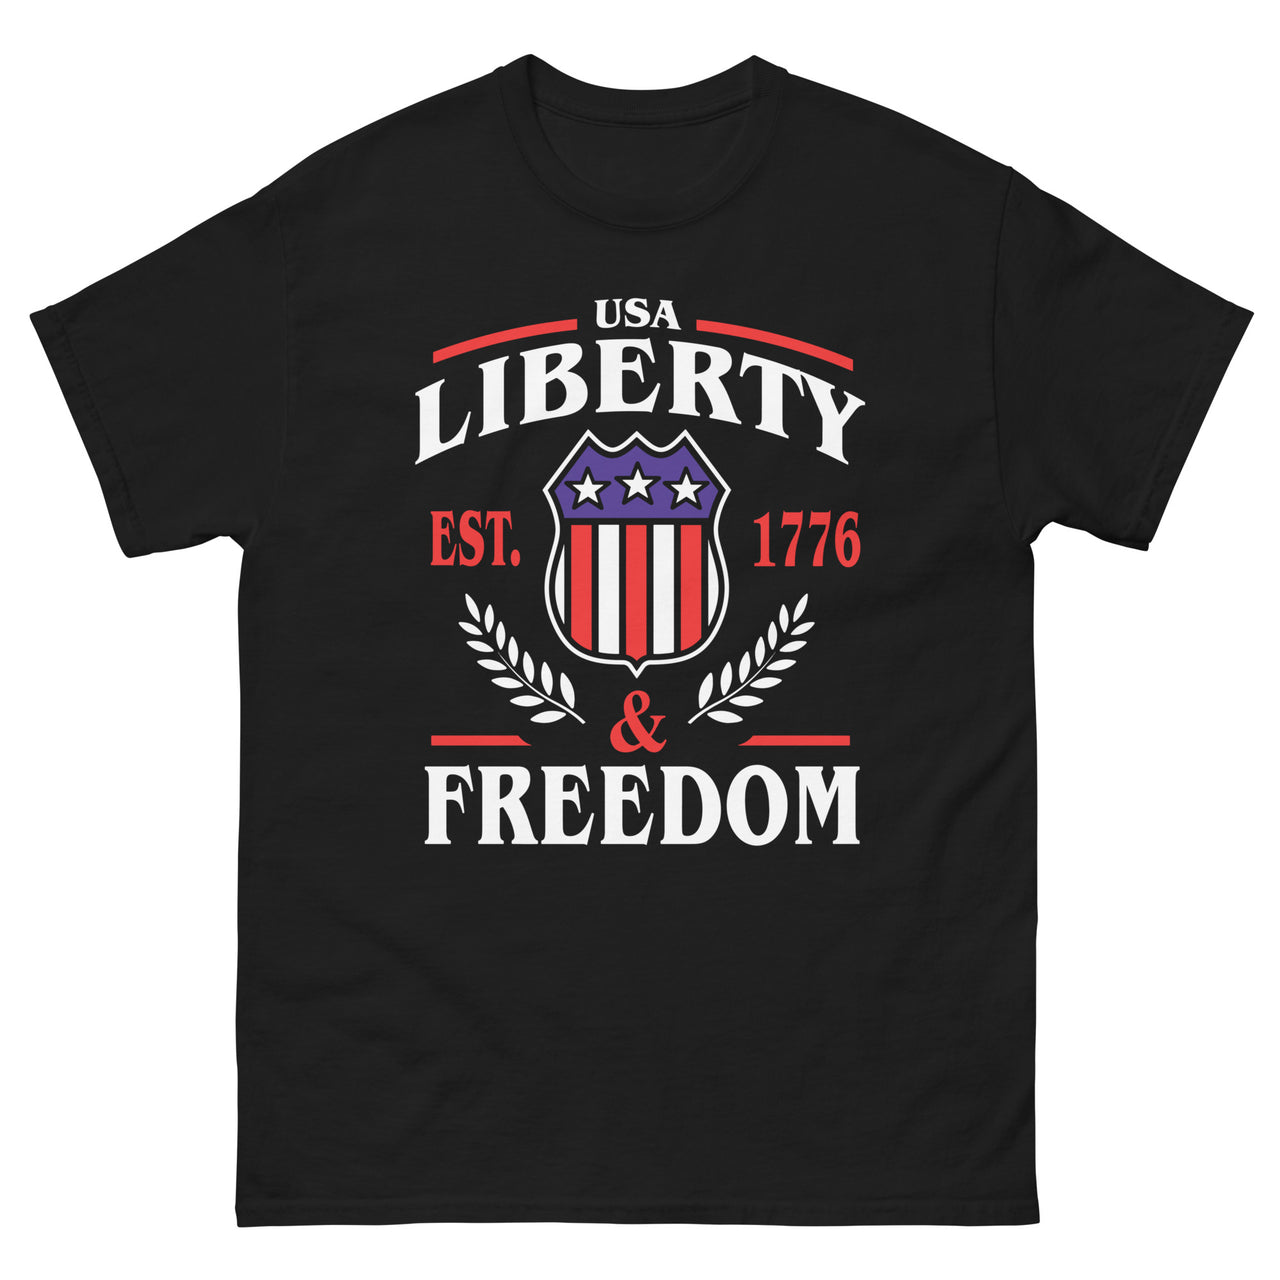 Liberty & Freedom Ver 2 Men's classic tee